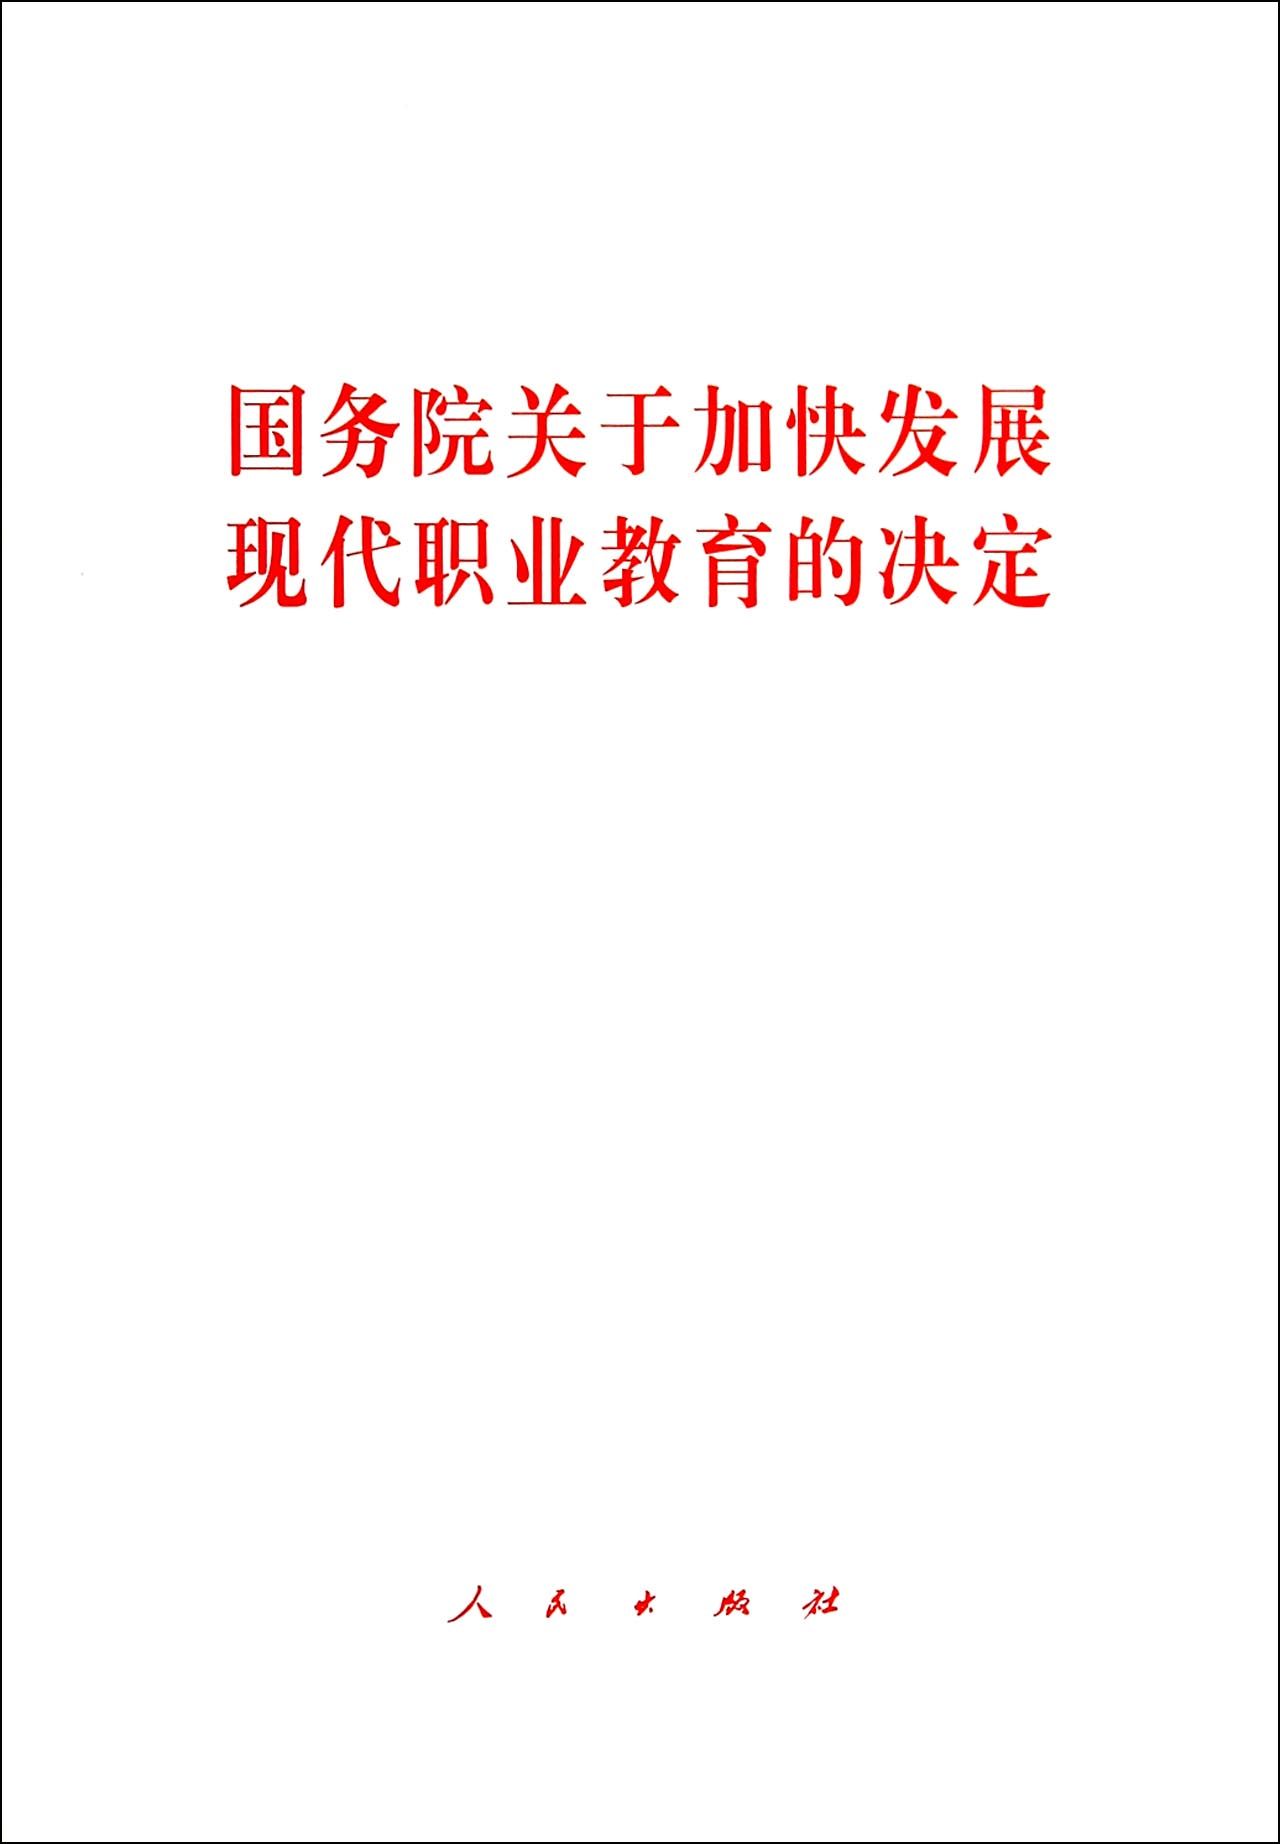 北京市人民政府關於加快發展現代職業教育的實施意見